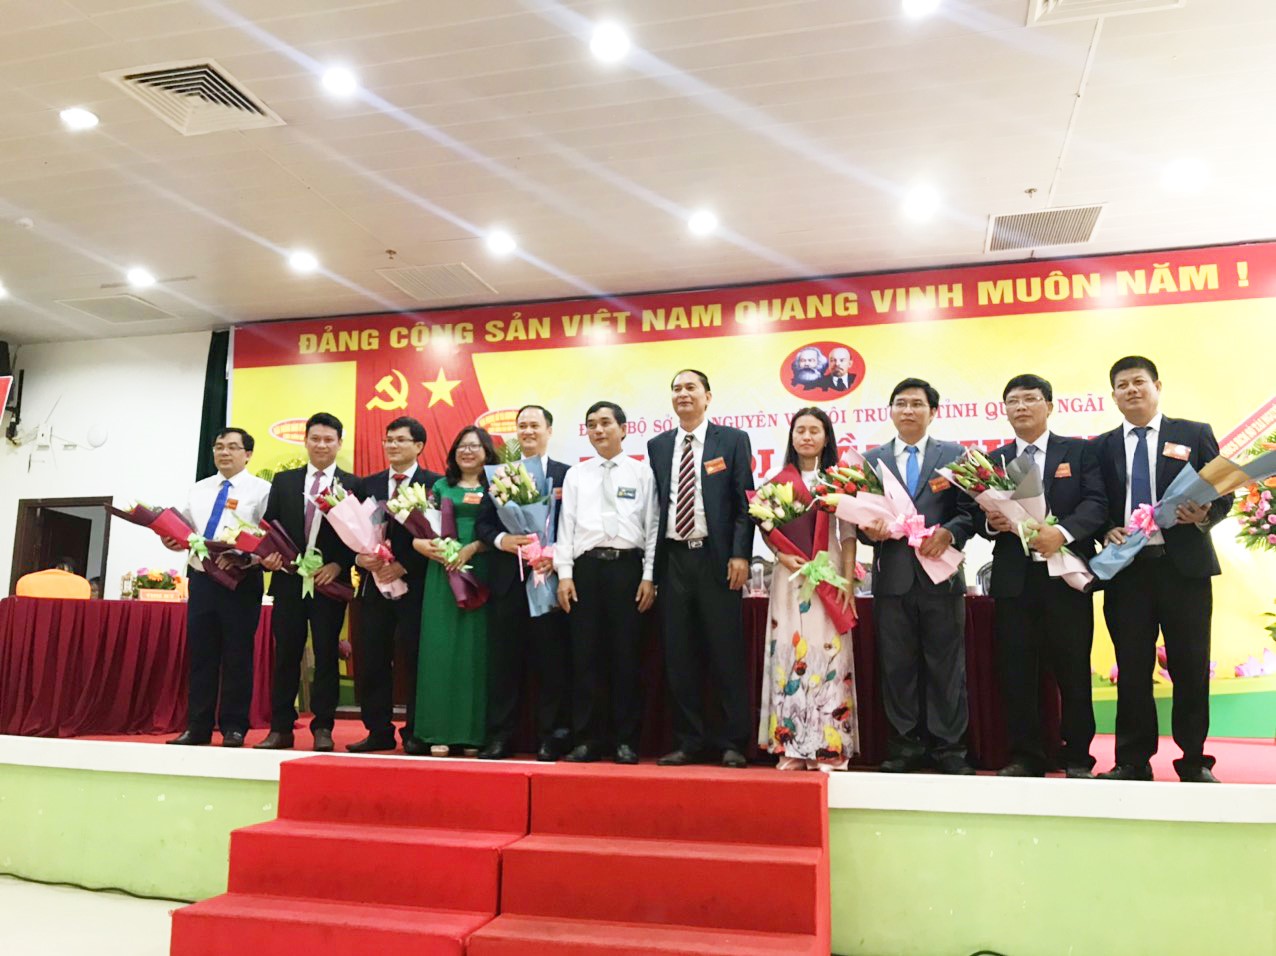 Đảng bộ Sở Tài nguyên và Môi trường tỉnh Quảng Ngãi tổ chức Đại hội Đảng bộ Sở lần thứ X, nhiệm kỳ 2020 - 2025